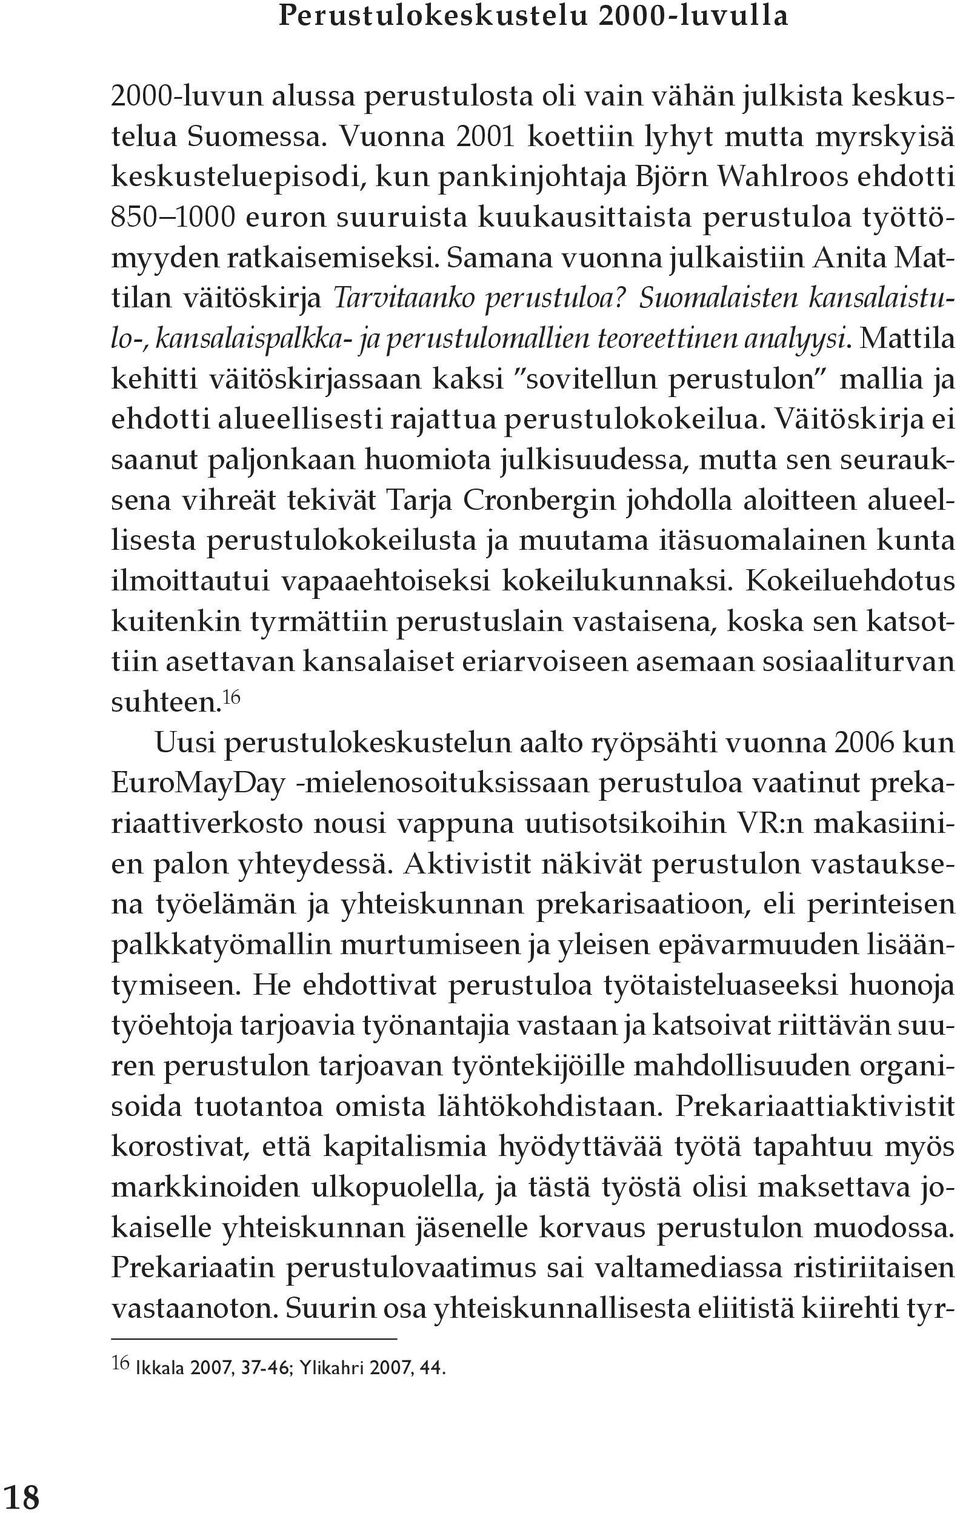 Samana vuonna julkaistiin Anita Mattilan väitöskirja Tarvitaanko perustuloa? Suomalaisten kansalaistulo-, kansalaispalkka- ja perustulomallien teoreettinen analyysi.